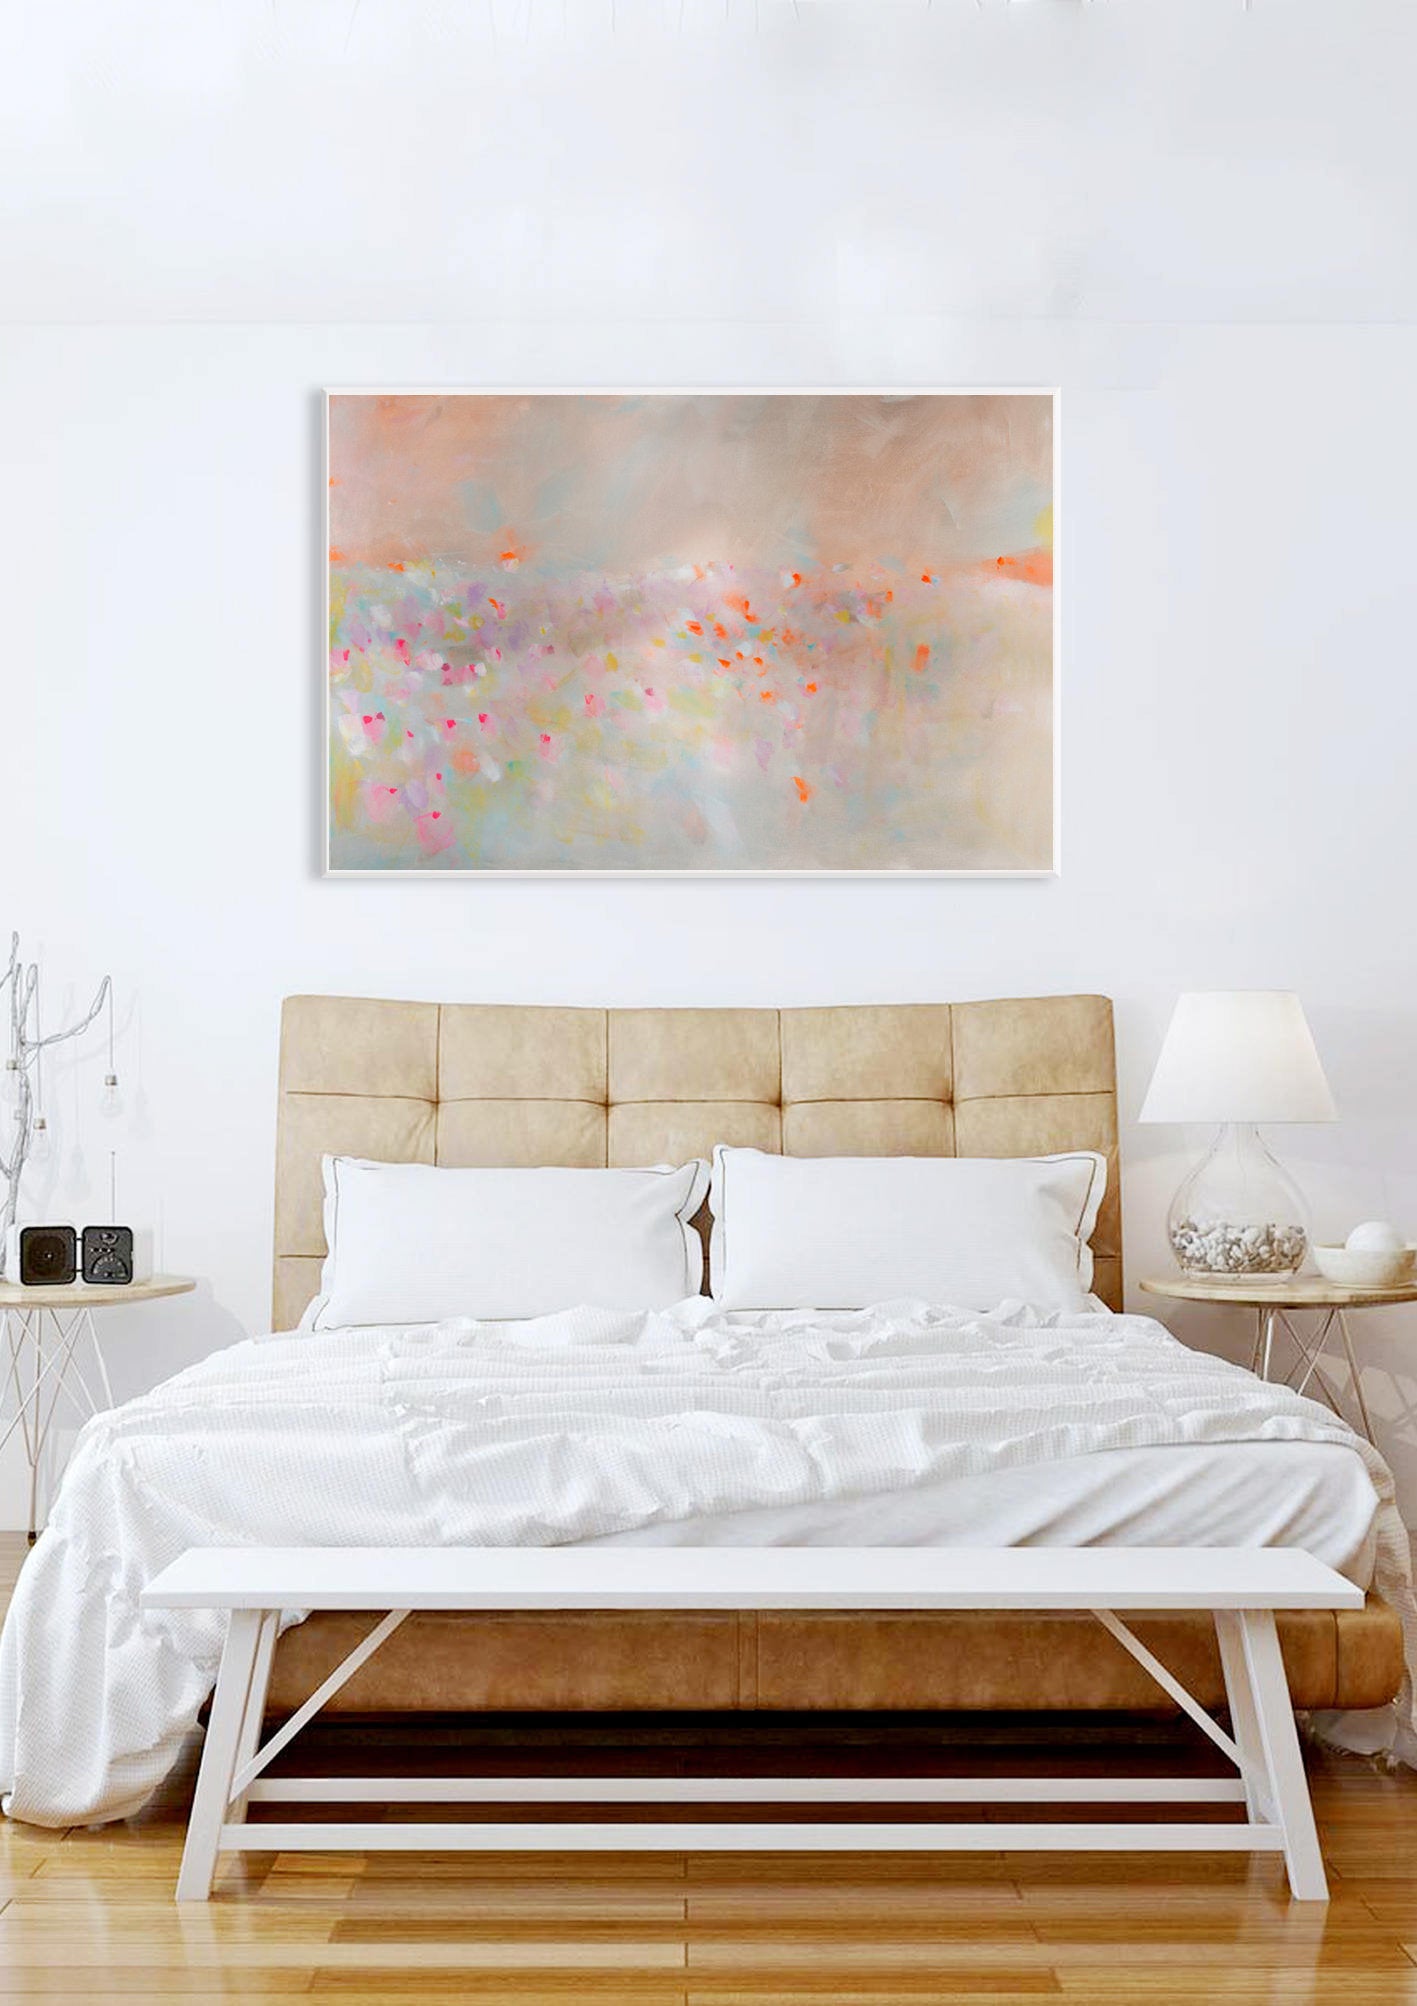 Abstract landscape painting, pastel colors art, pink, beige and orange landscape - camilomattis.com